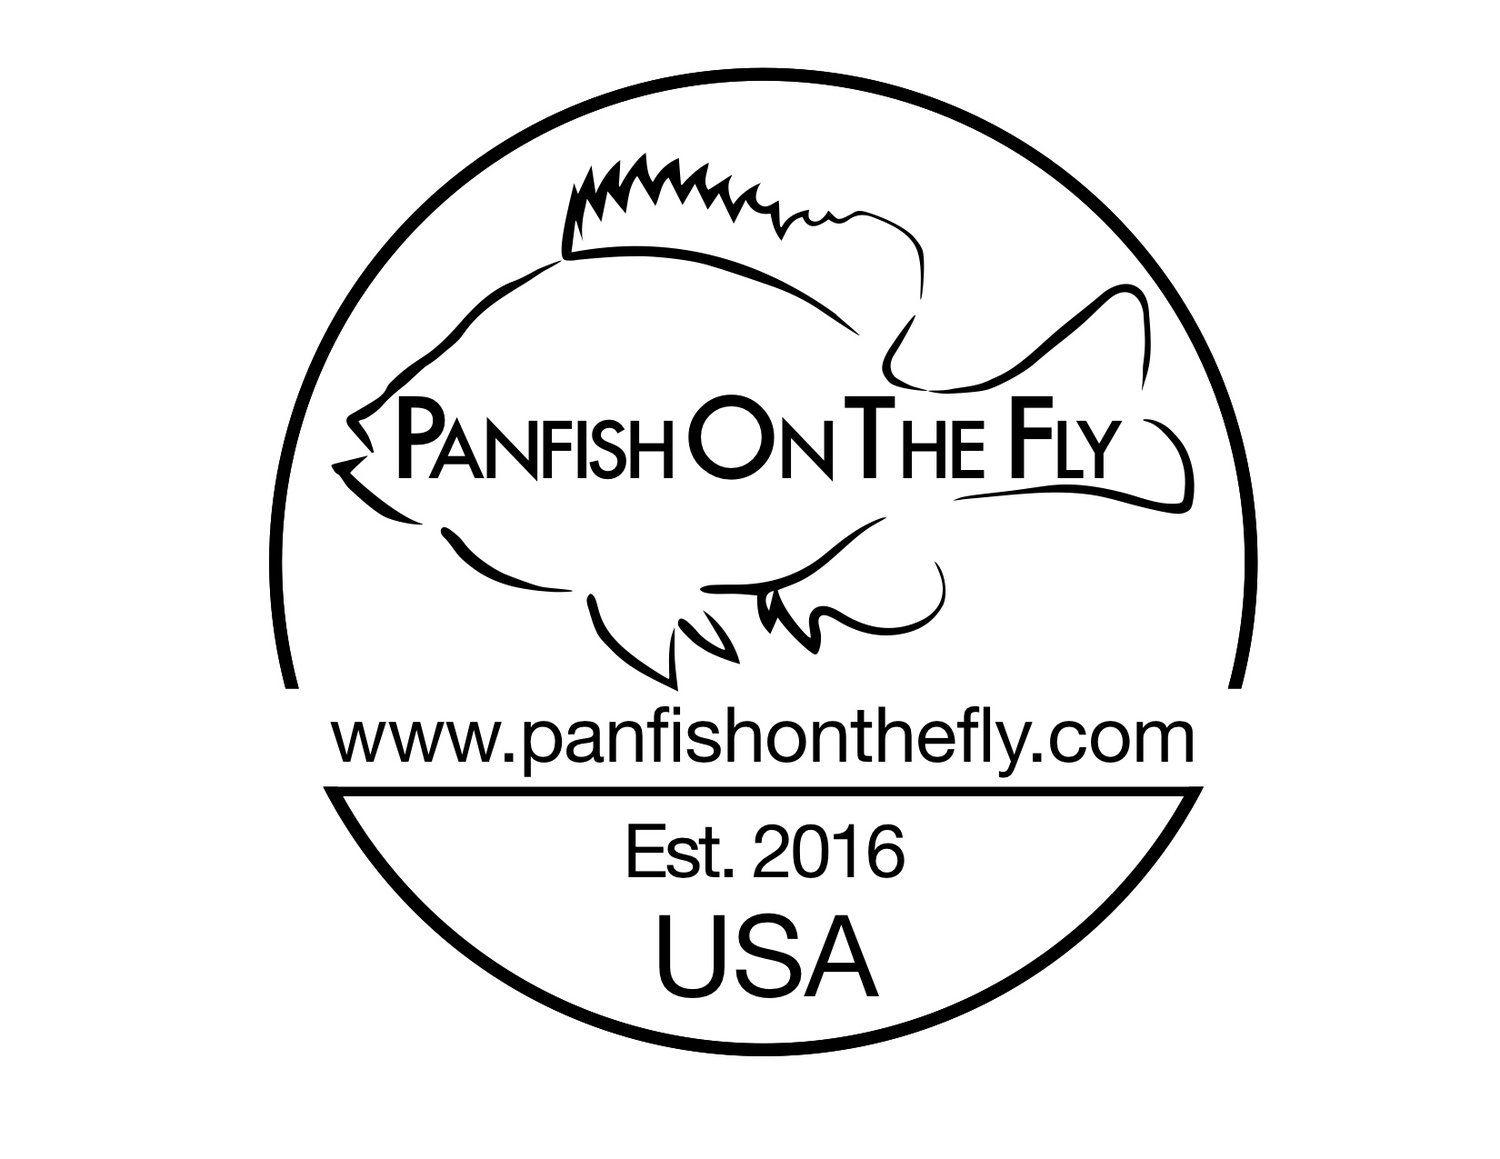 www.panfishonthefly.com